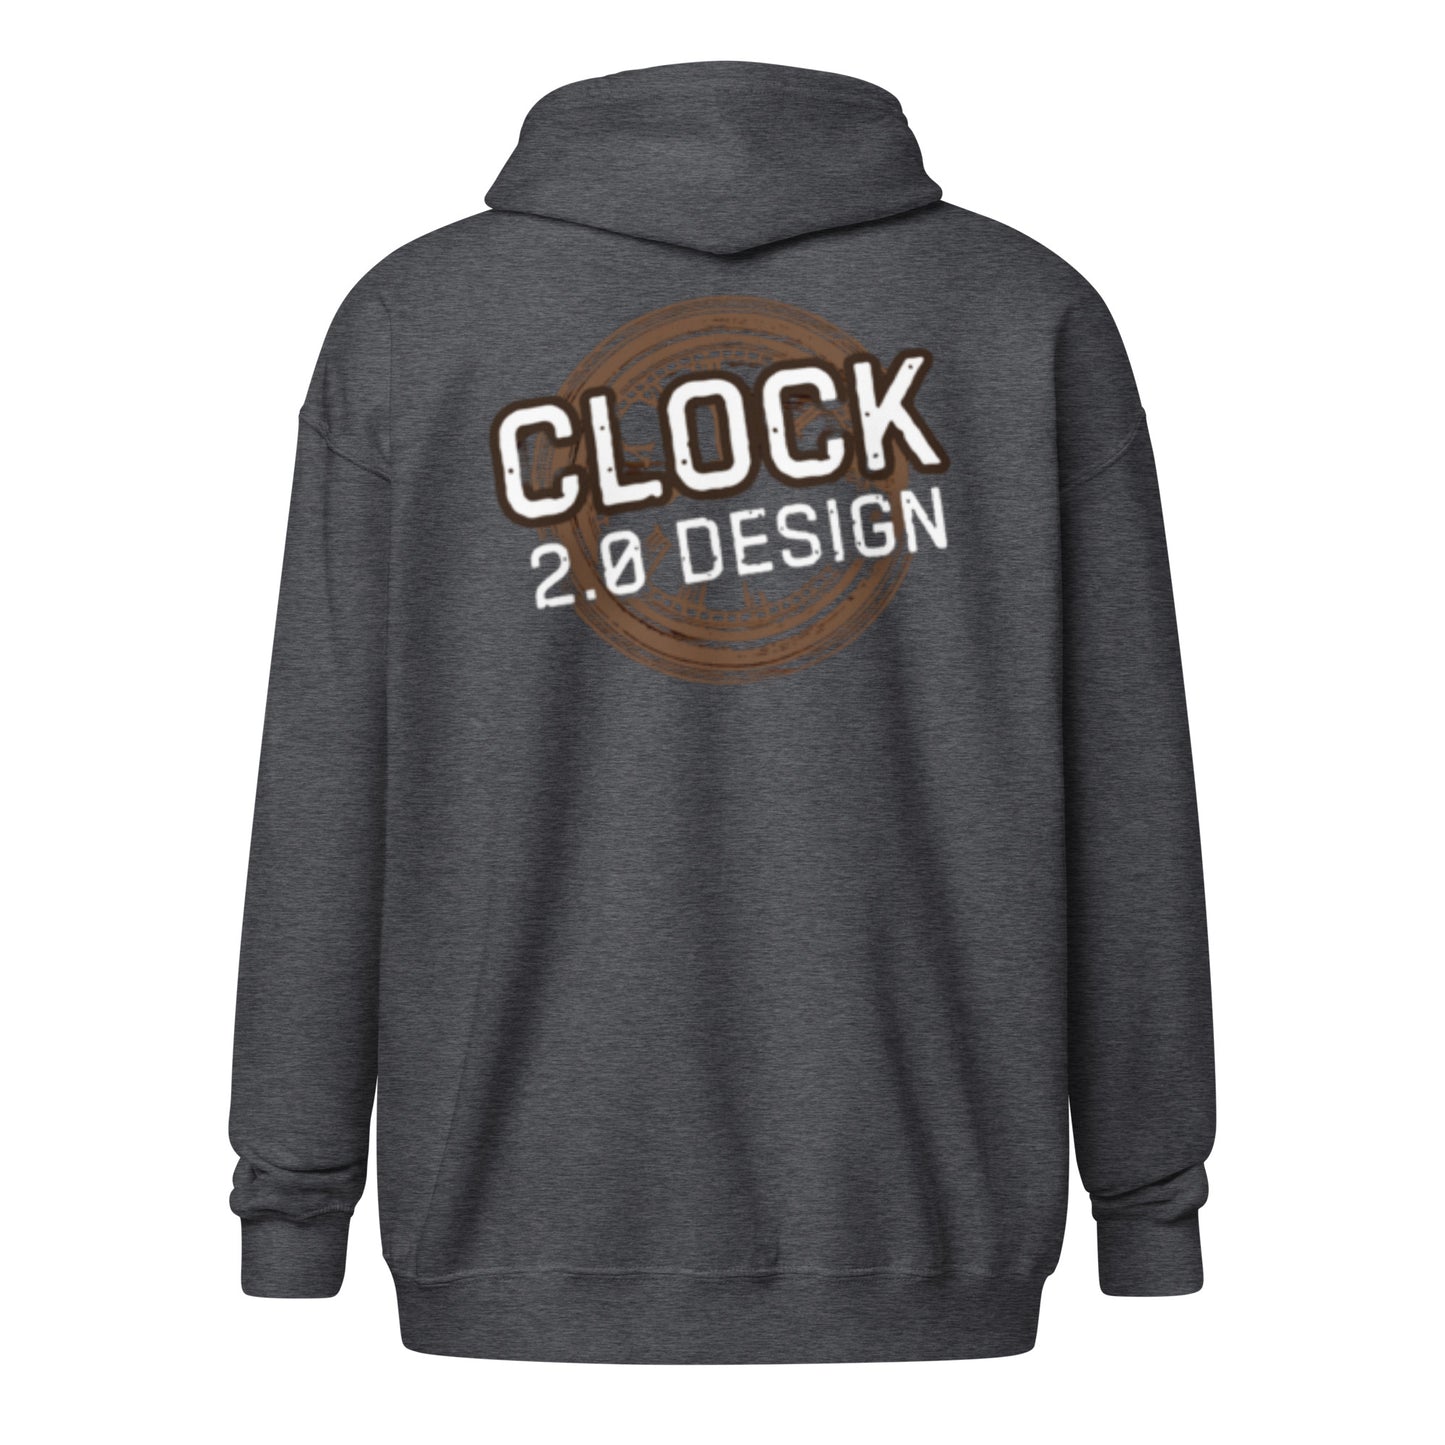 "Clock 2.0 Design" huppari vetoketjulla (logo rinnassa ja selässä)